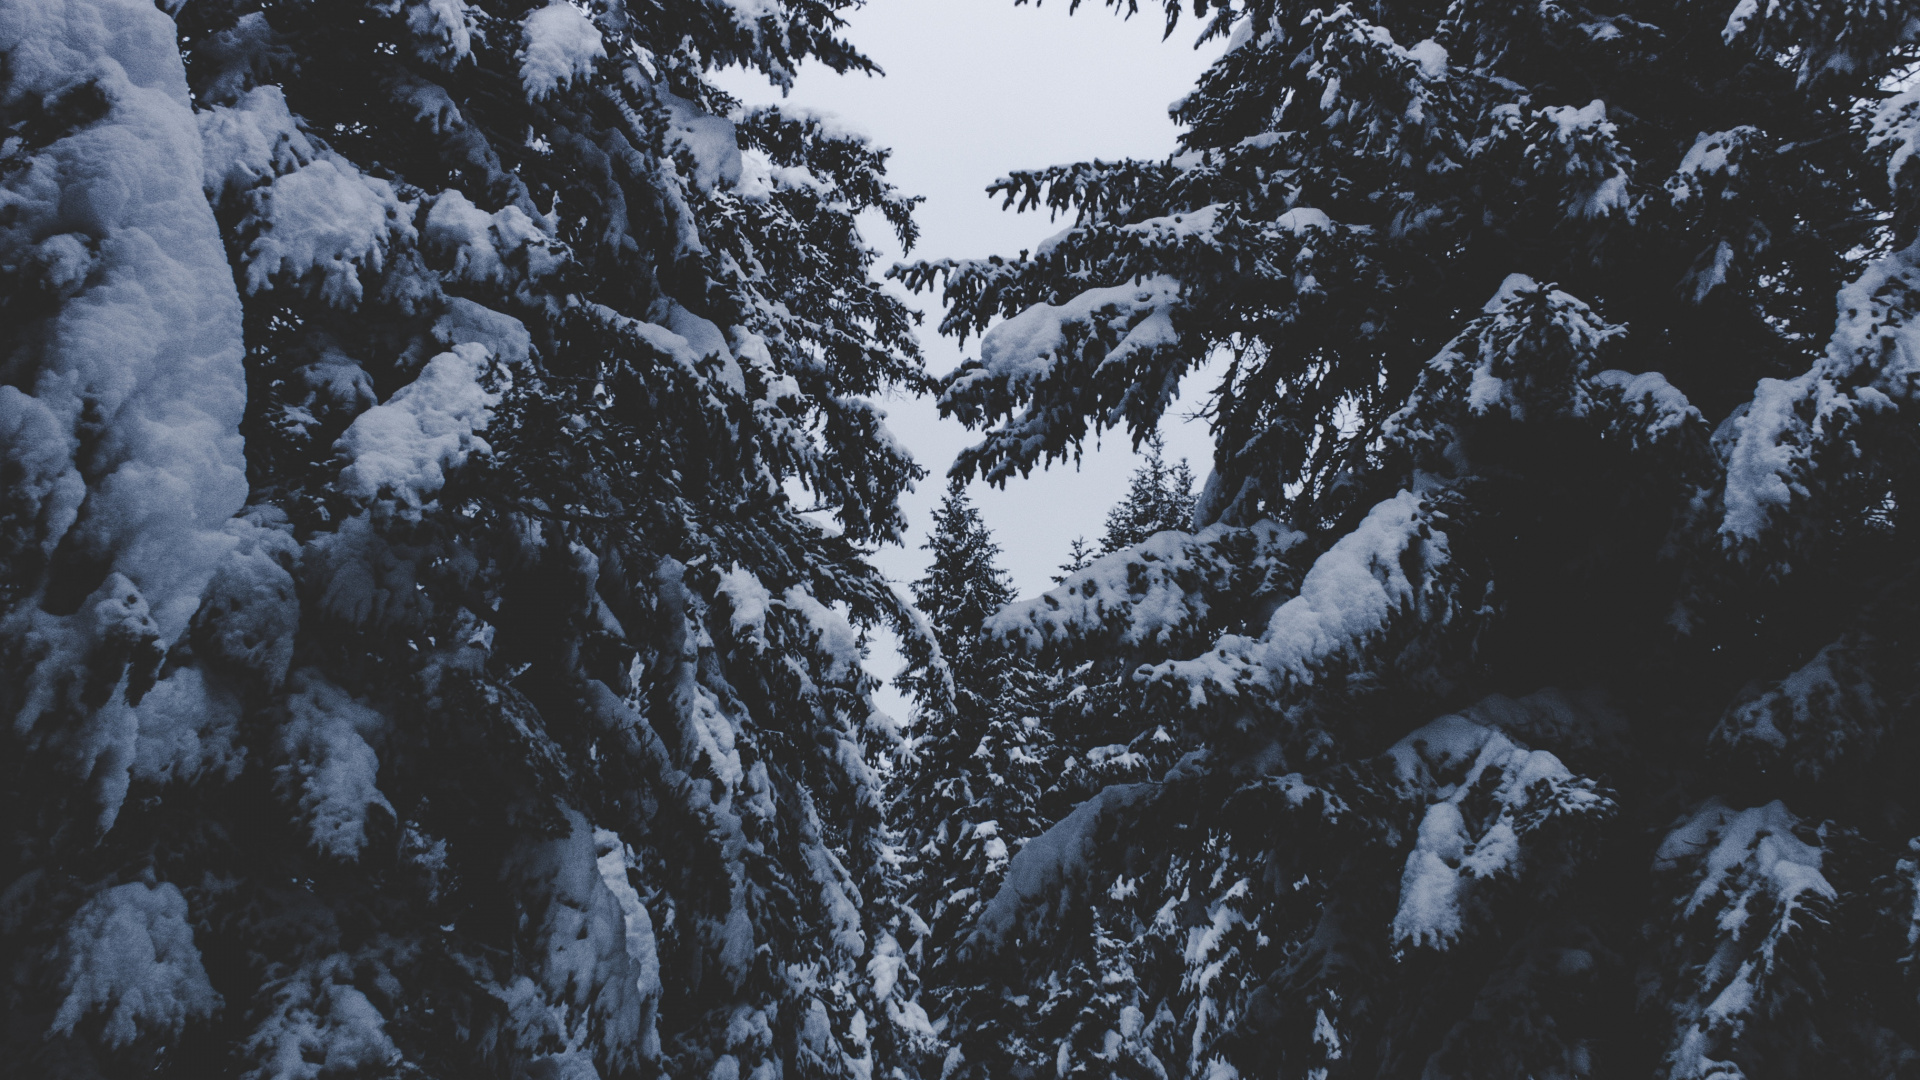 Nieve, Invierno, Congelación, Planta Leñosa, Abeto de Bosques de Abetos. Wallpaper in 1920x1080 Resolution